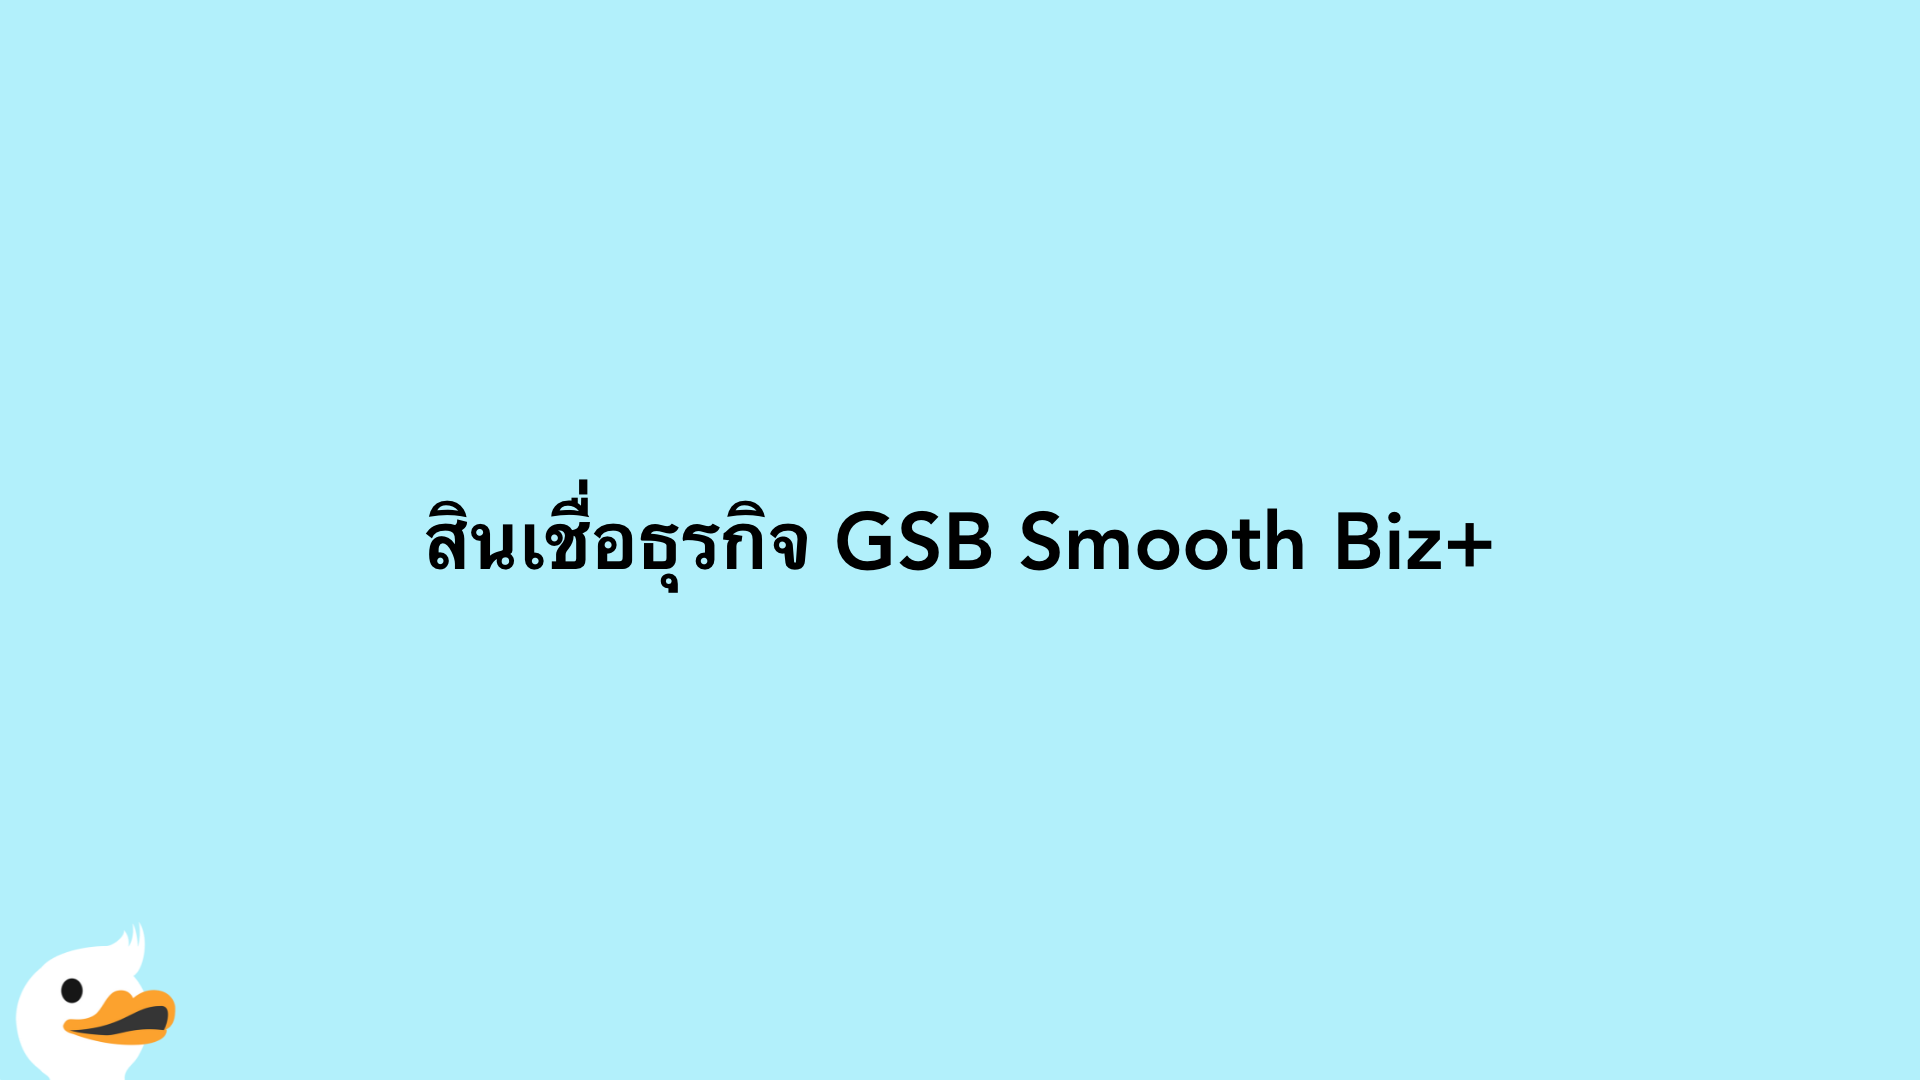 สินเชื่อธุรกิจ GSB Smooth Biz+